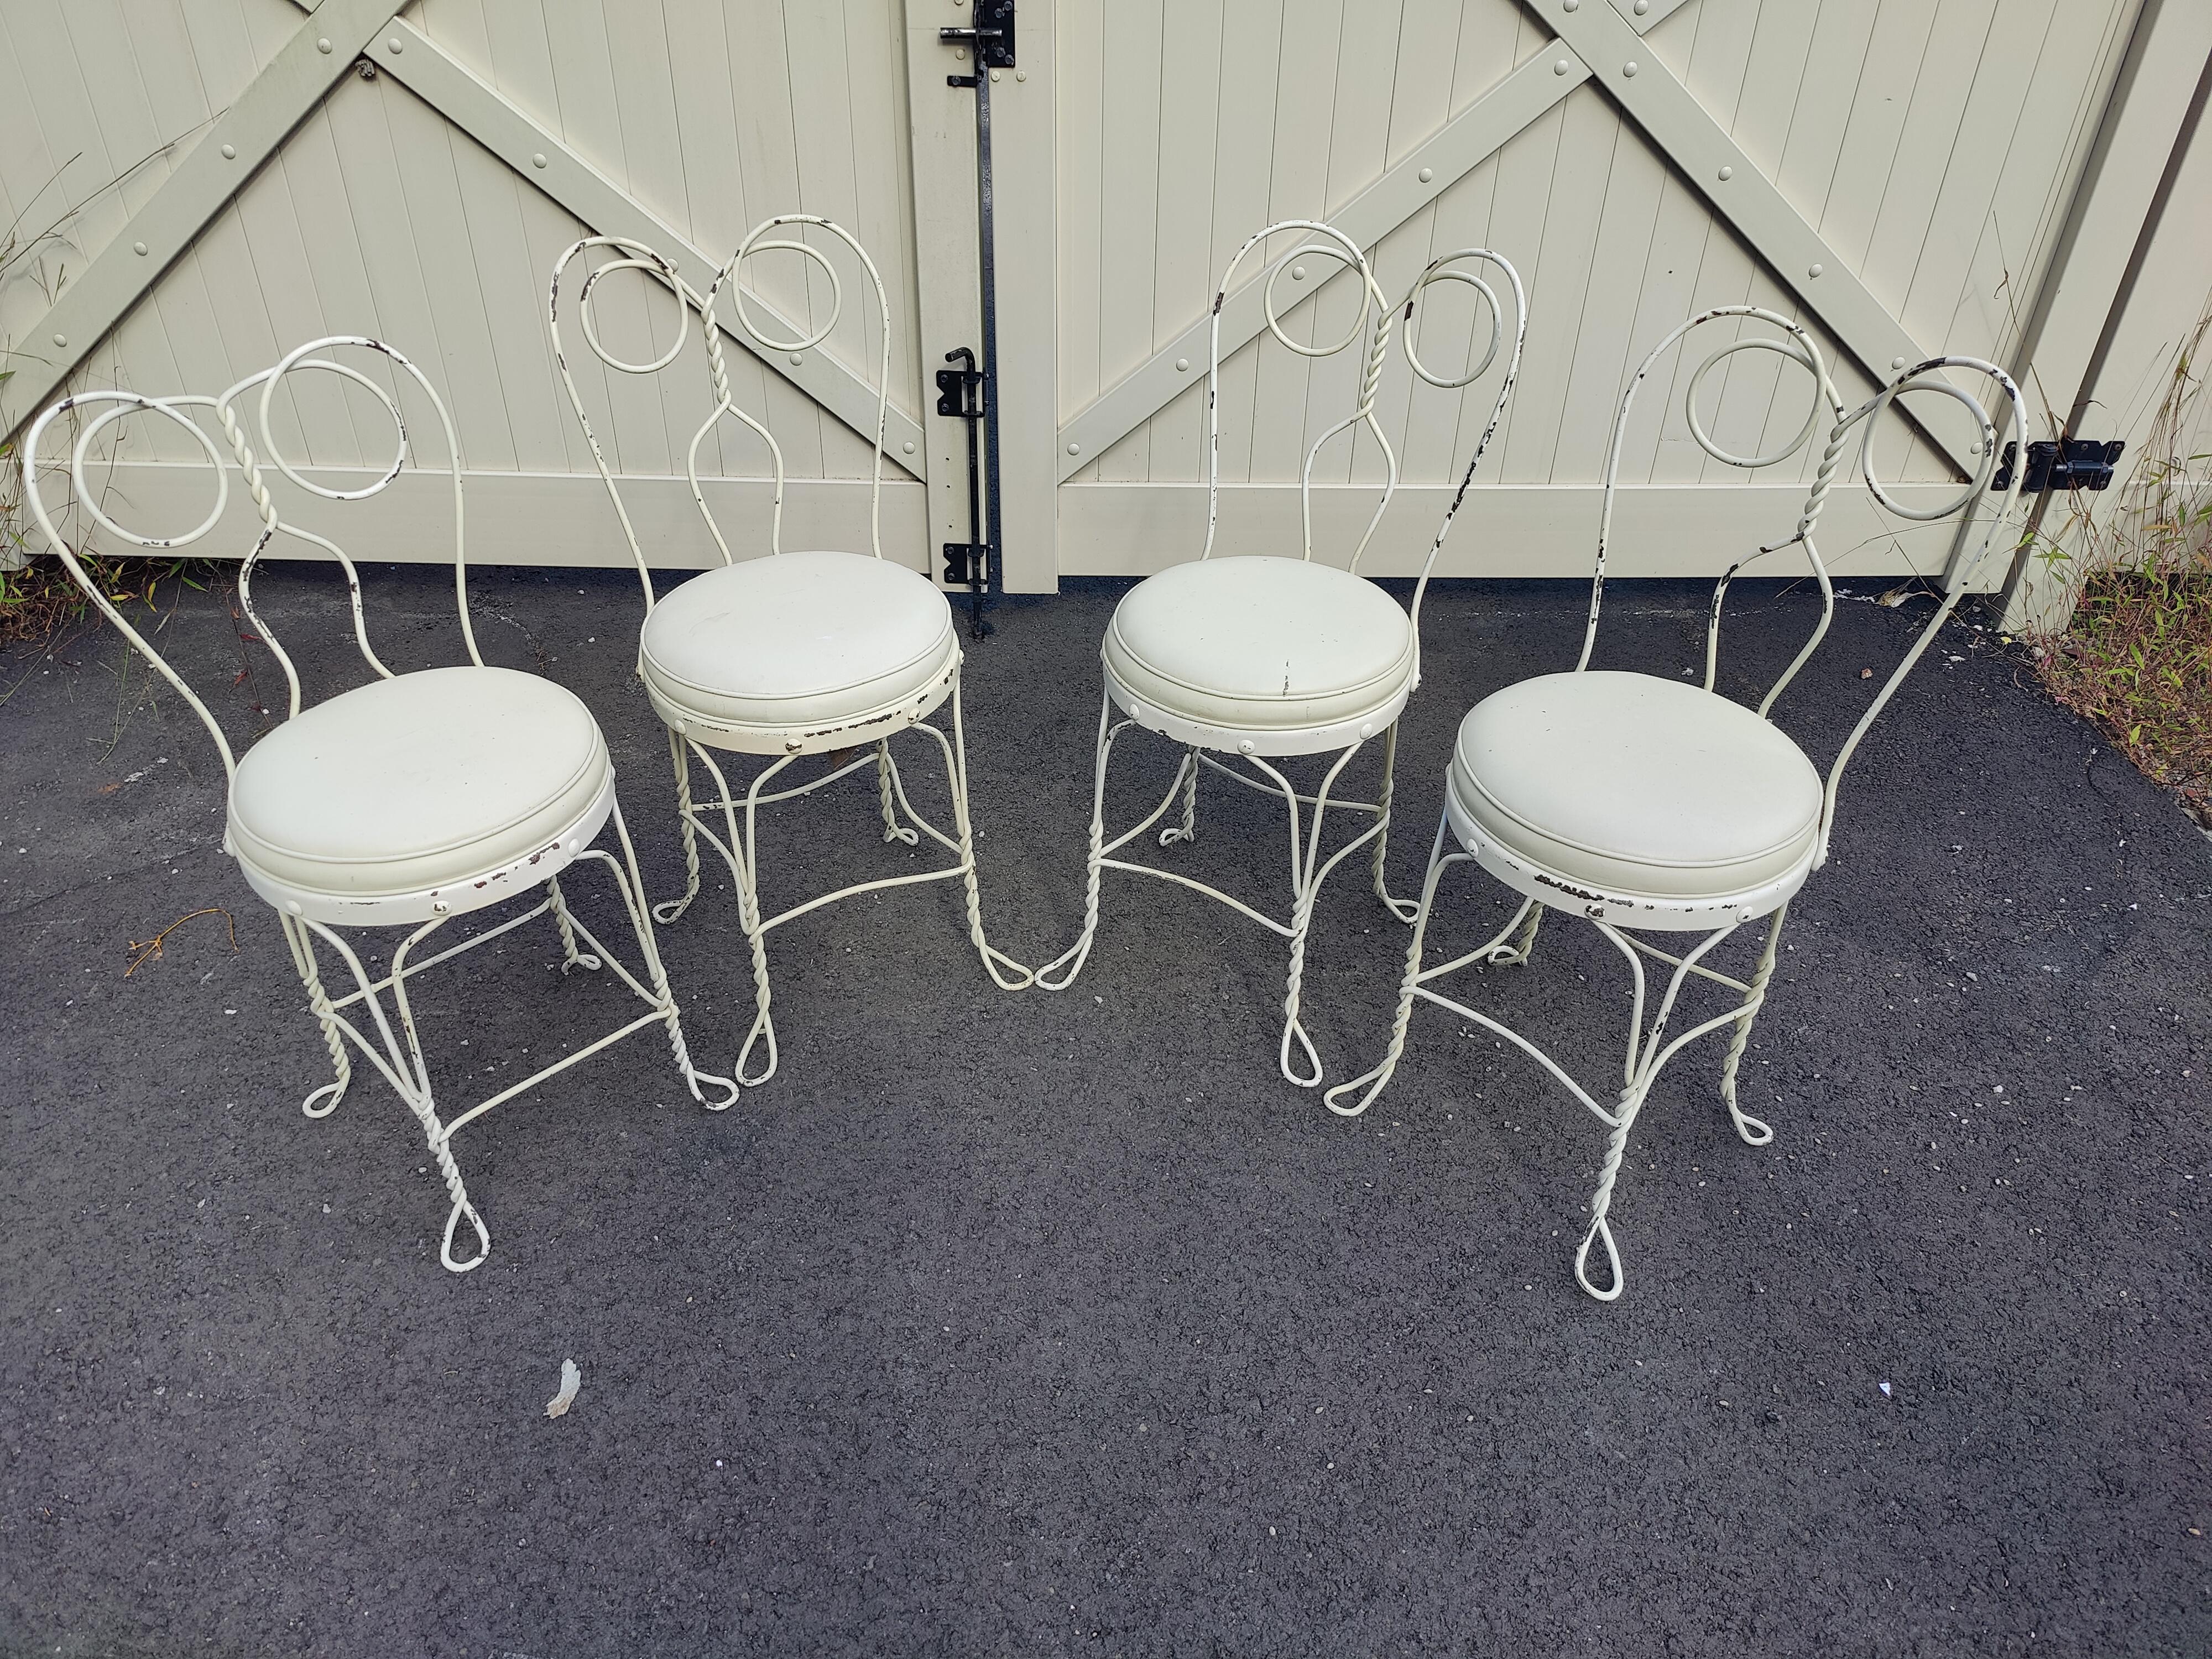 Ensemble de ( 4 ) chaises à glace en fer forgé vintage. Avec ses pieds en métal torsadé, son dossier et ses sièges rembourrés blancs.

(Veuillez confirmer l'emplacement de l'article - NY ou NJ - avec le concessionnaire).